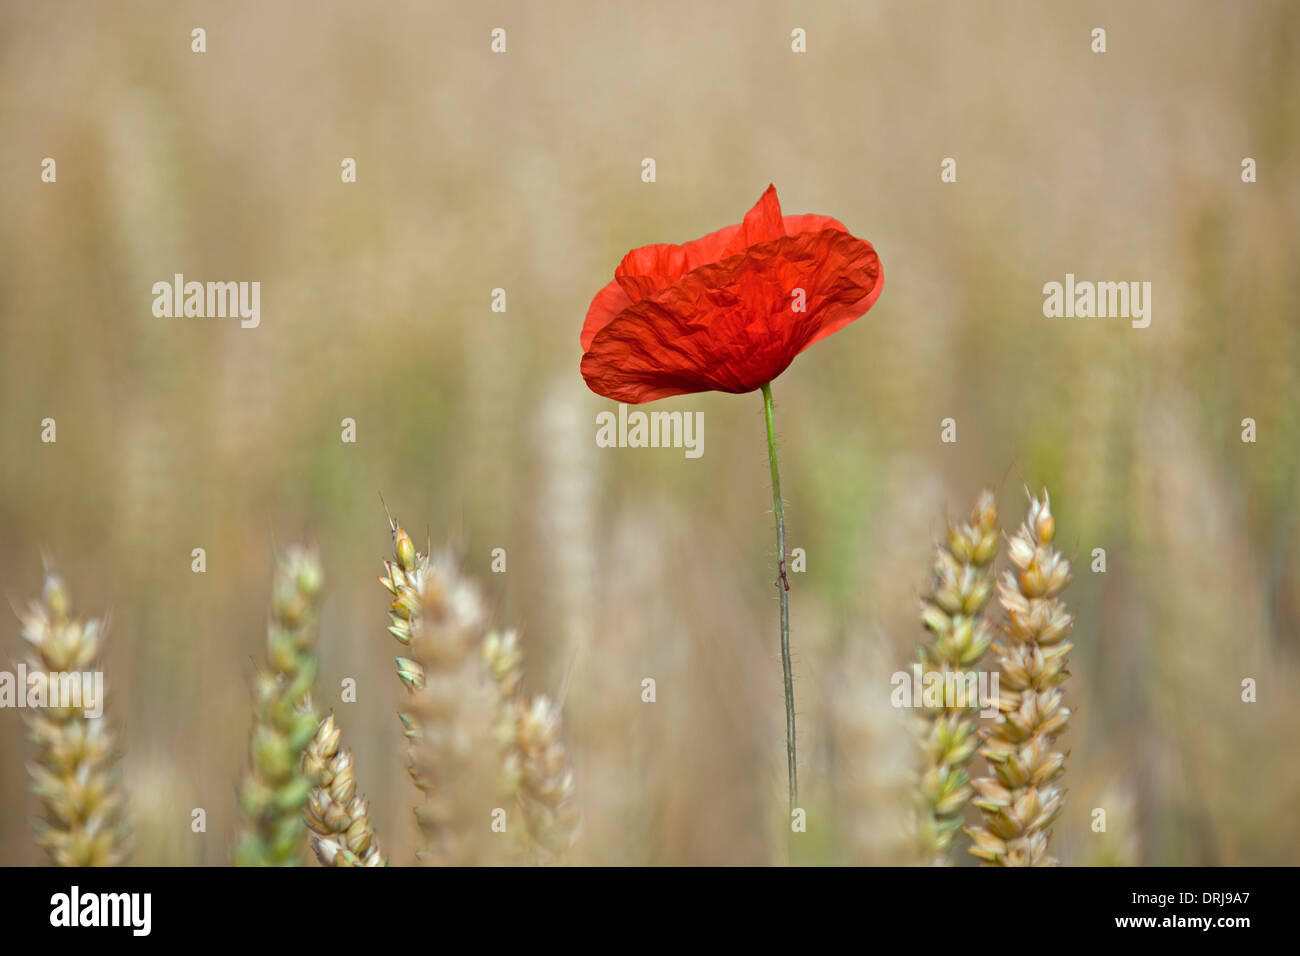 Paesaggio rurale che mostra comune rosso papavero / campo di papavero (Papaver rhoeas) fioritura in cornfield su terreno coltivato in estate Foto Stock